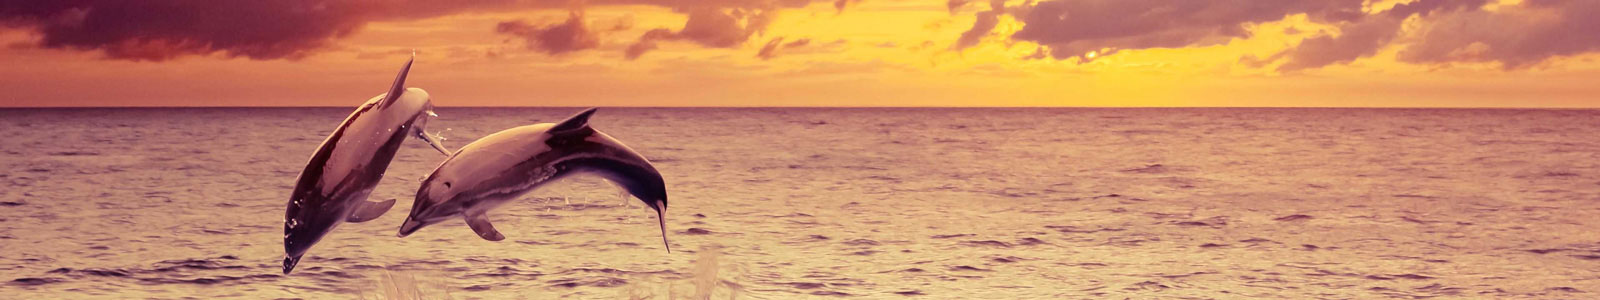 №4345 - Пара дельфинов, романтичный закат, изображение с эффектом рисунка маслом